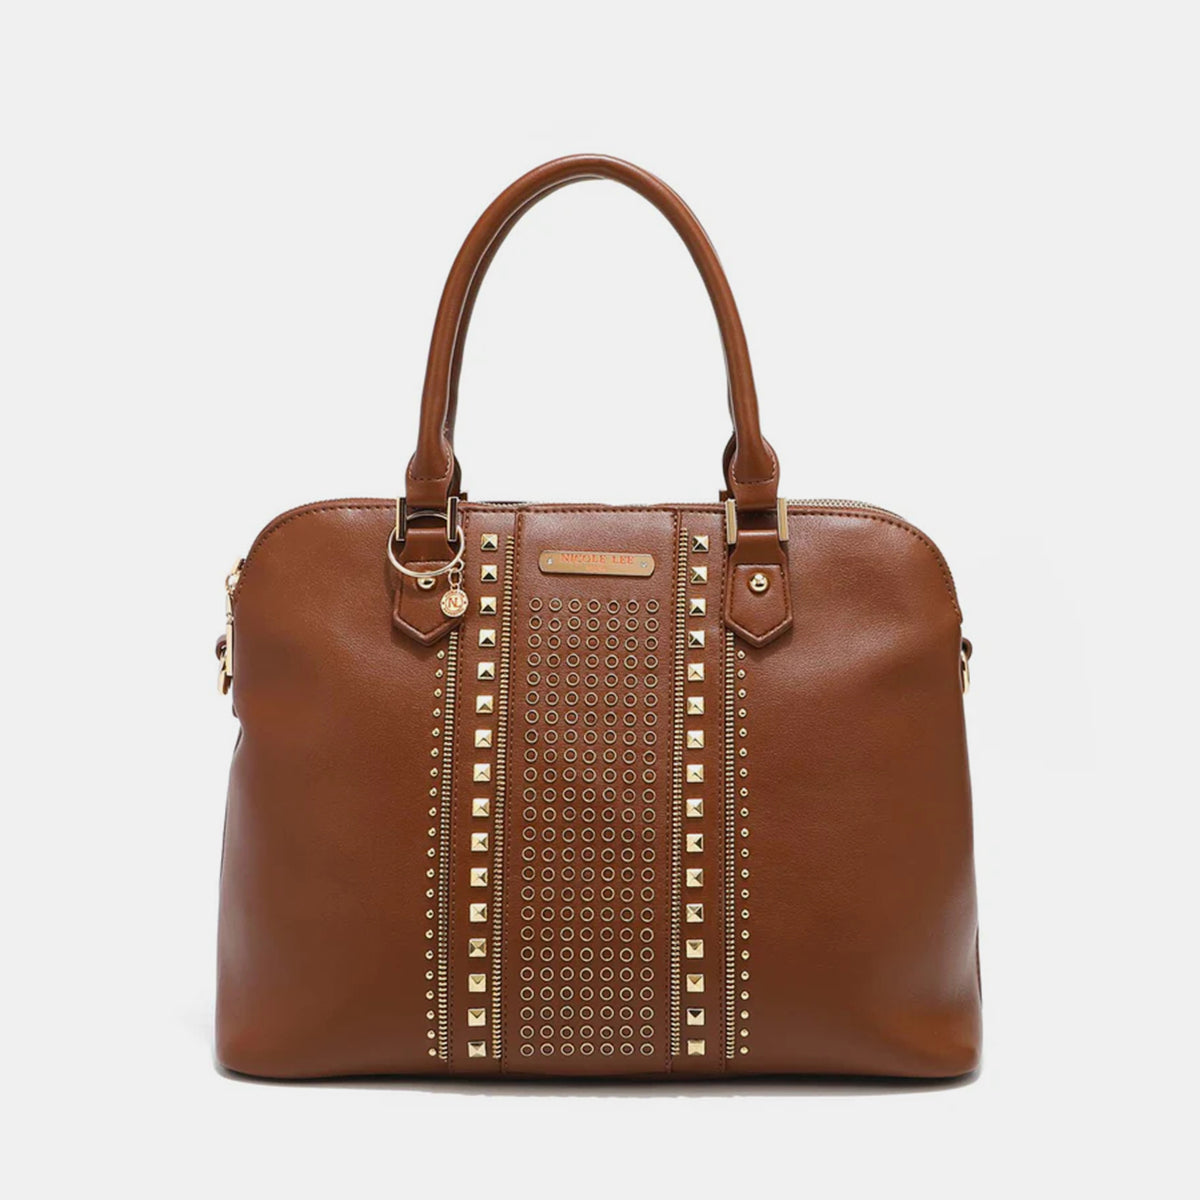 Nicole Lee USA Studded Decor Handbag Brown One Size